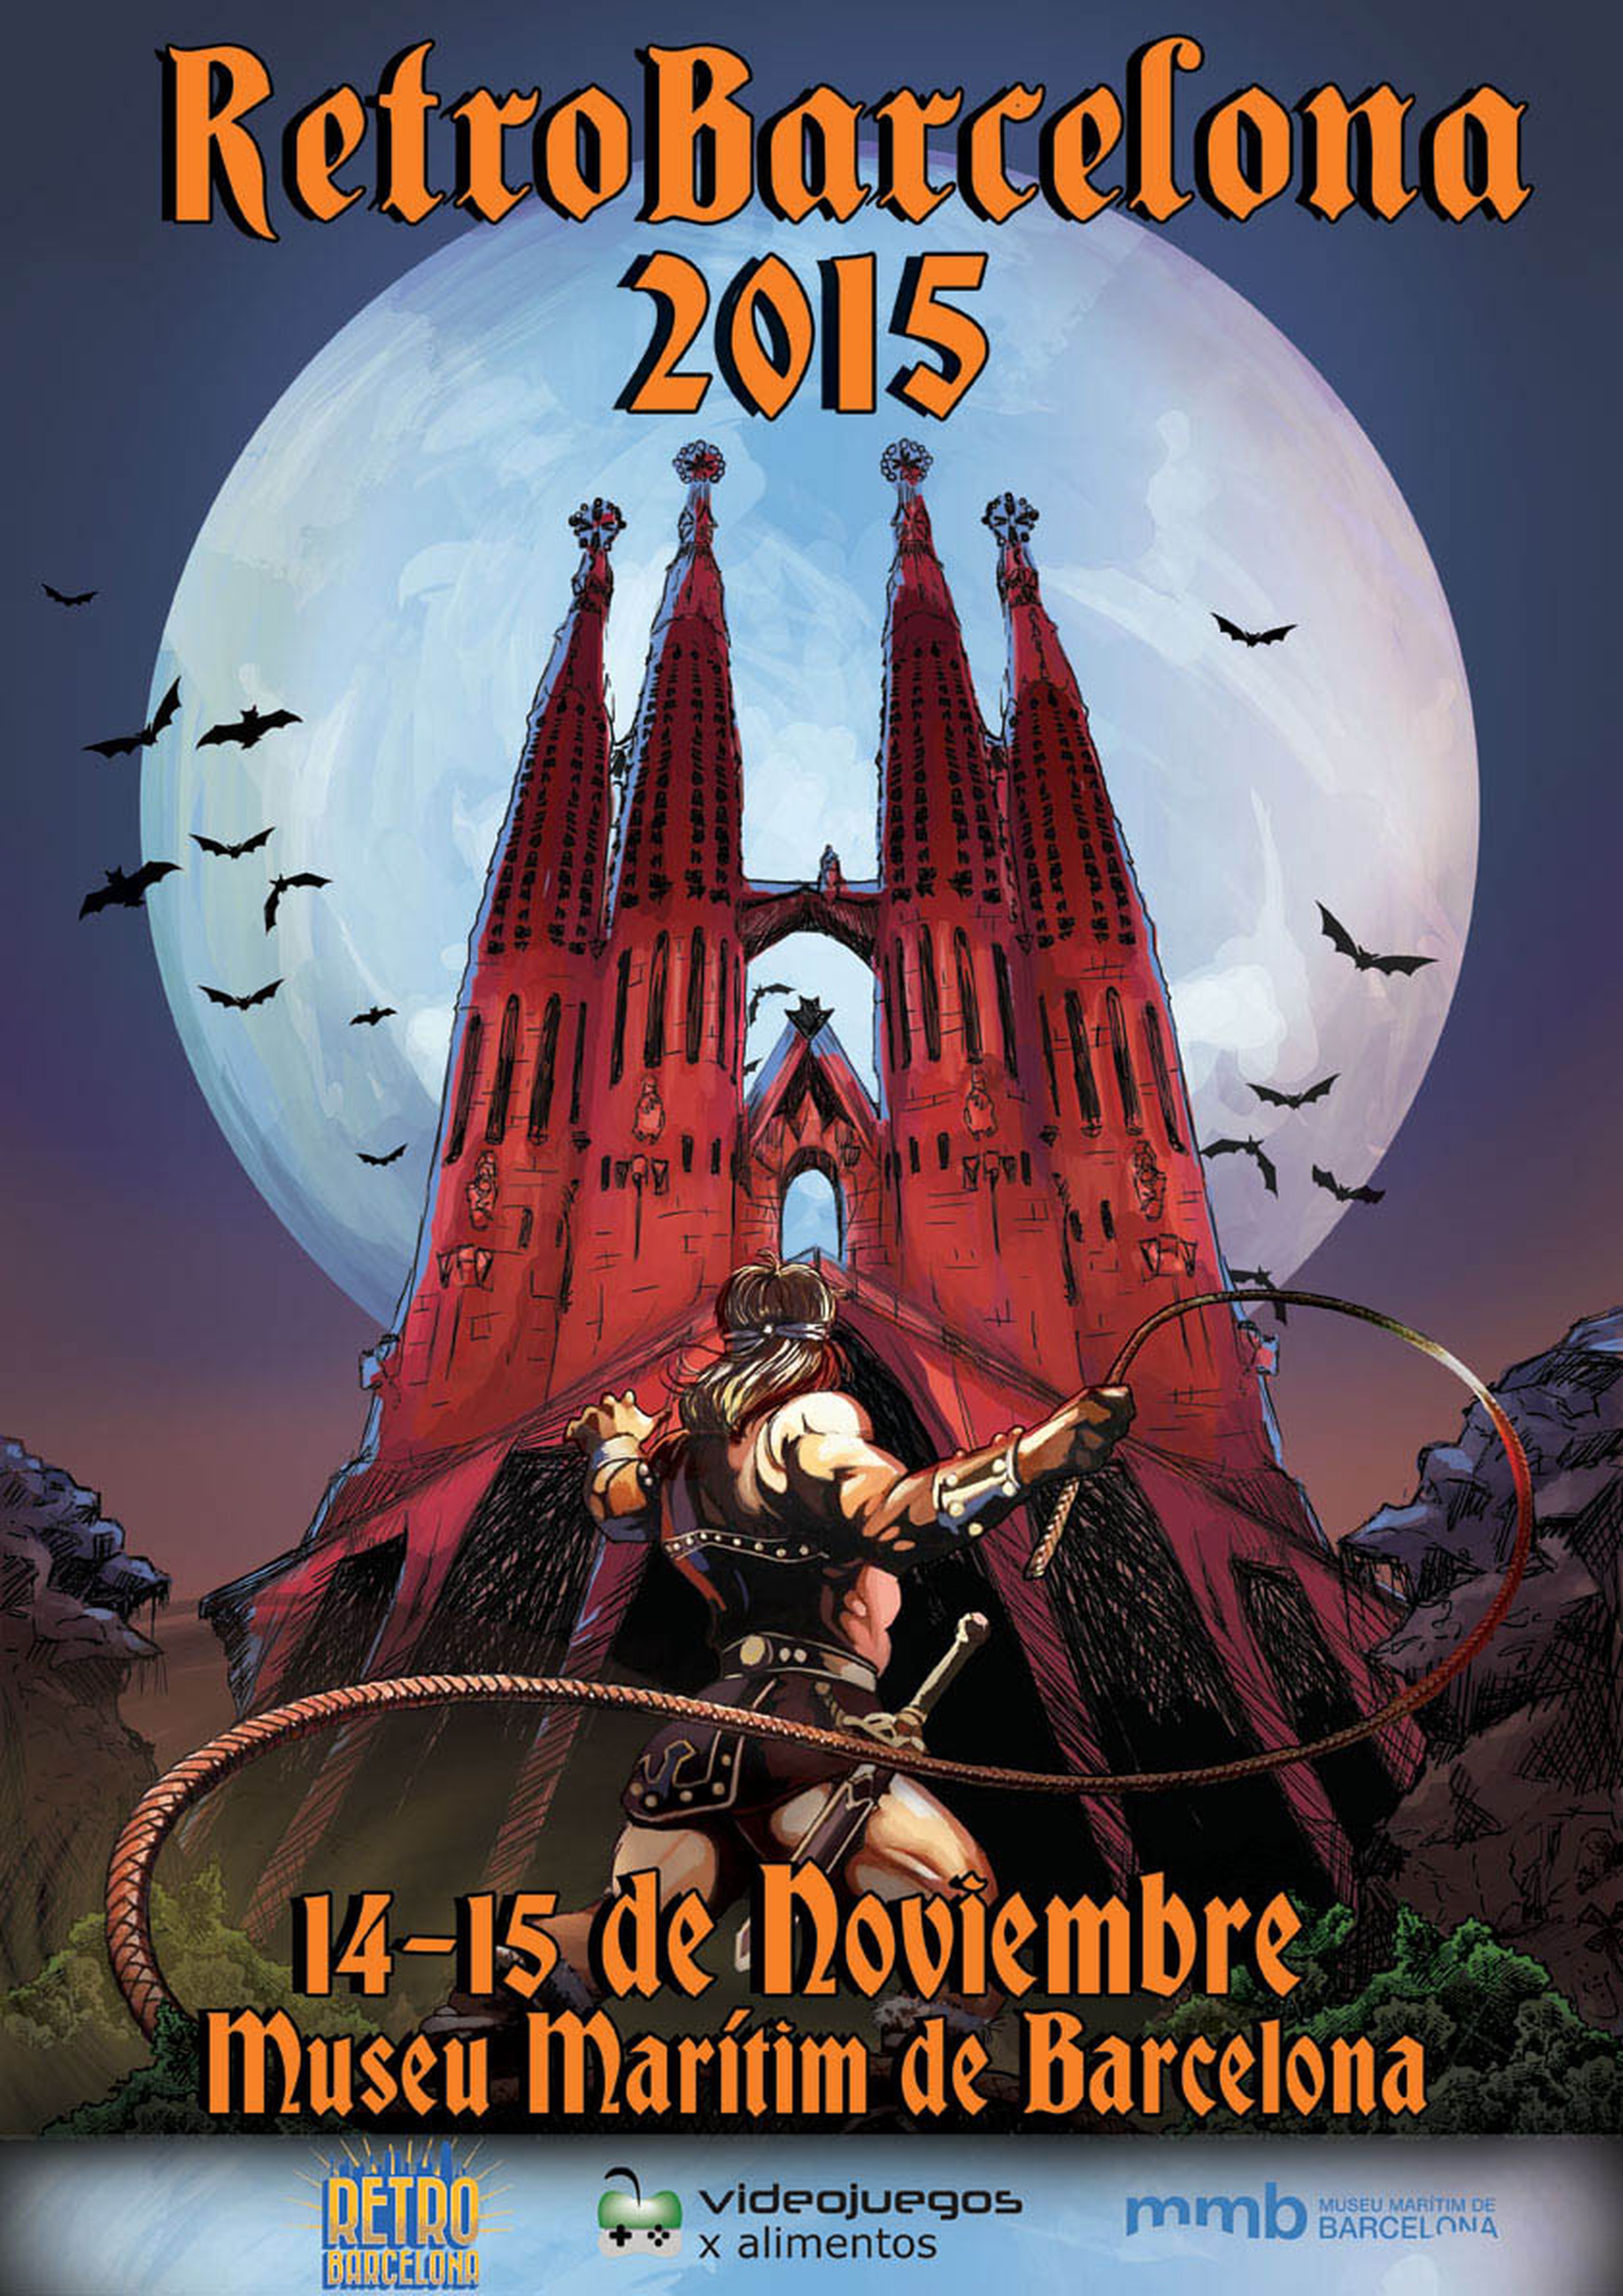 El espectacular cartel de RetroBarcelona 2015 era todo un homenaje a Castlevania. Conociendo el furor de los nipones por Gaudí, este póster se agotaría en Japón en horas.